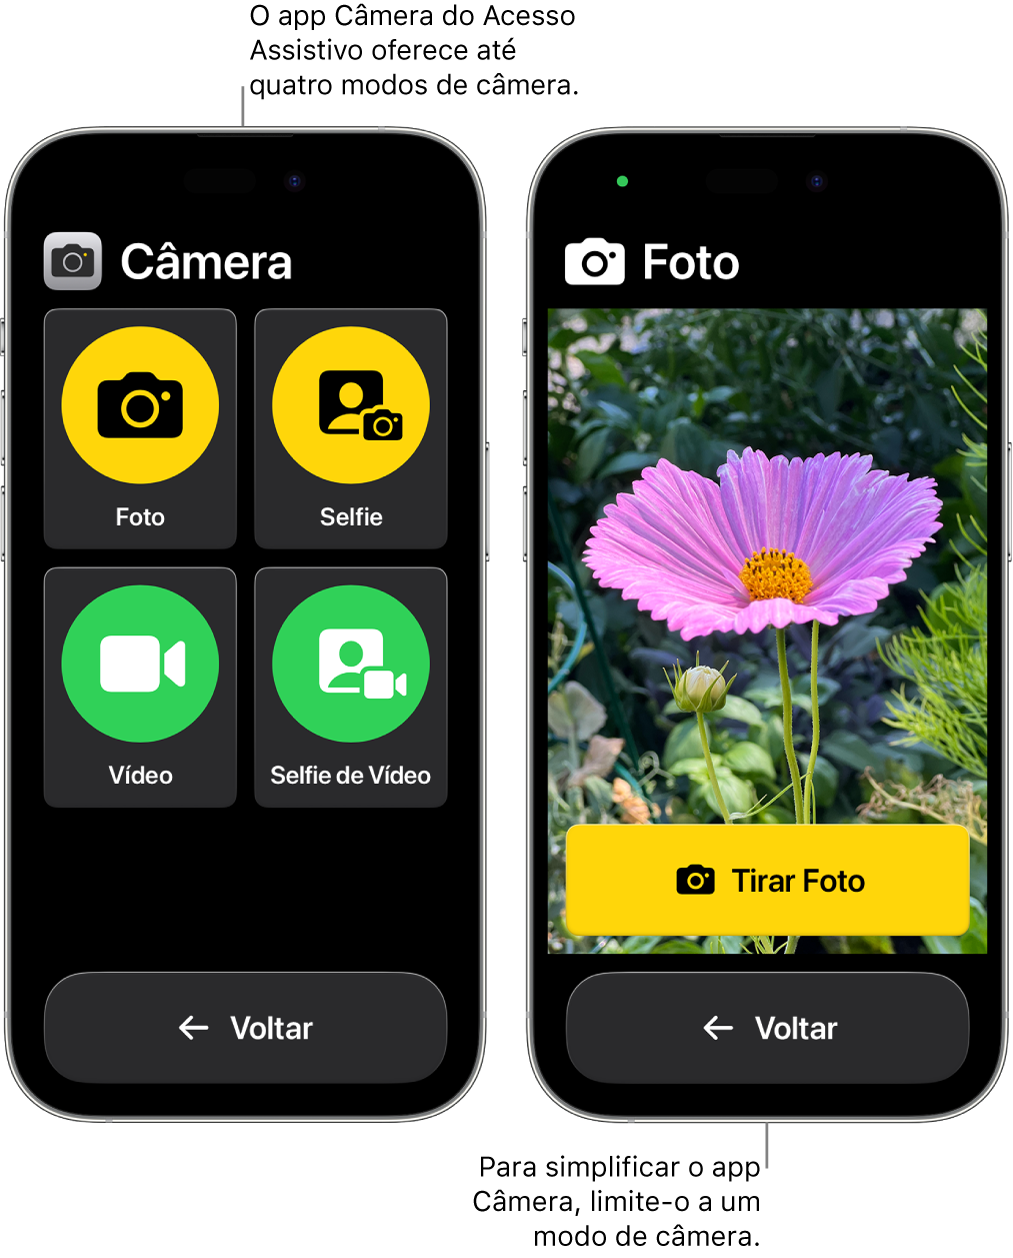 Dois iPhones no Acesso Assistivo. Um iPhone mostra o app Câmera com modos de câmera para escolha do usuário, como Vídeo ou Selfie. O outro iPhone mostra o app Câmera com um único modo para tirar fotos.